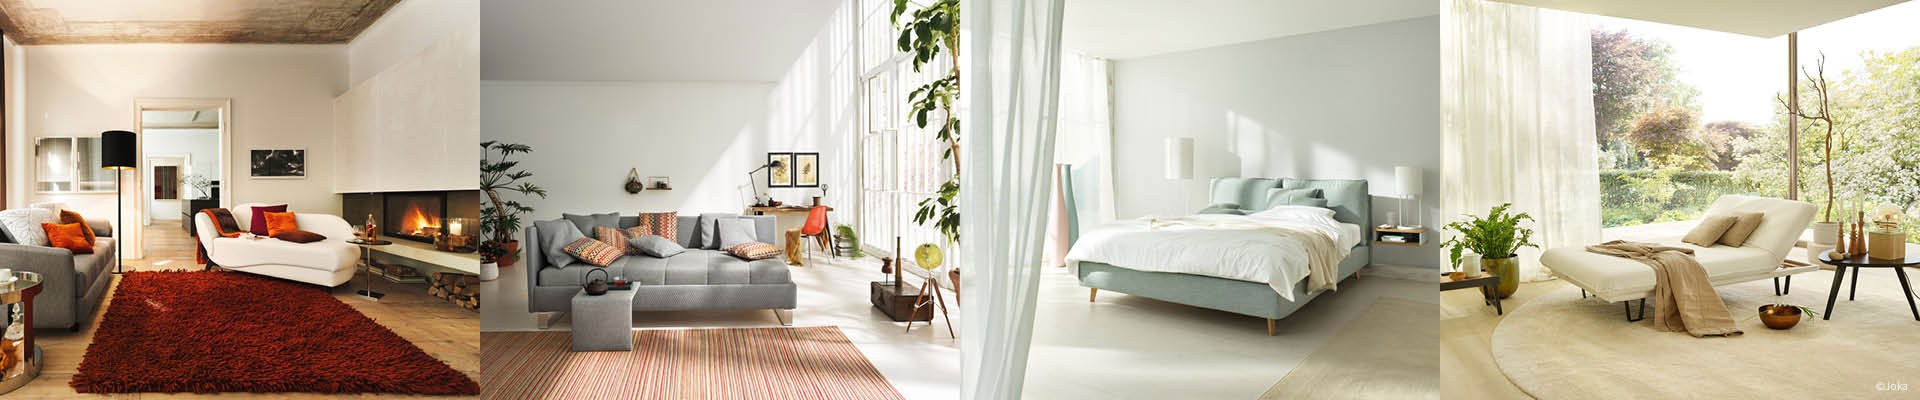 Ihre Möbeltischlerei in Hamburg für Wohnmöbel - Designmöbel & Polstermöbel der Marke JOKA für gehobene Wohn- und Schlafkultur - woodendesign feine Möbel